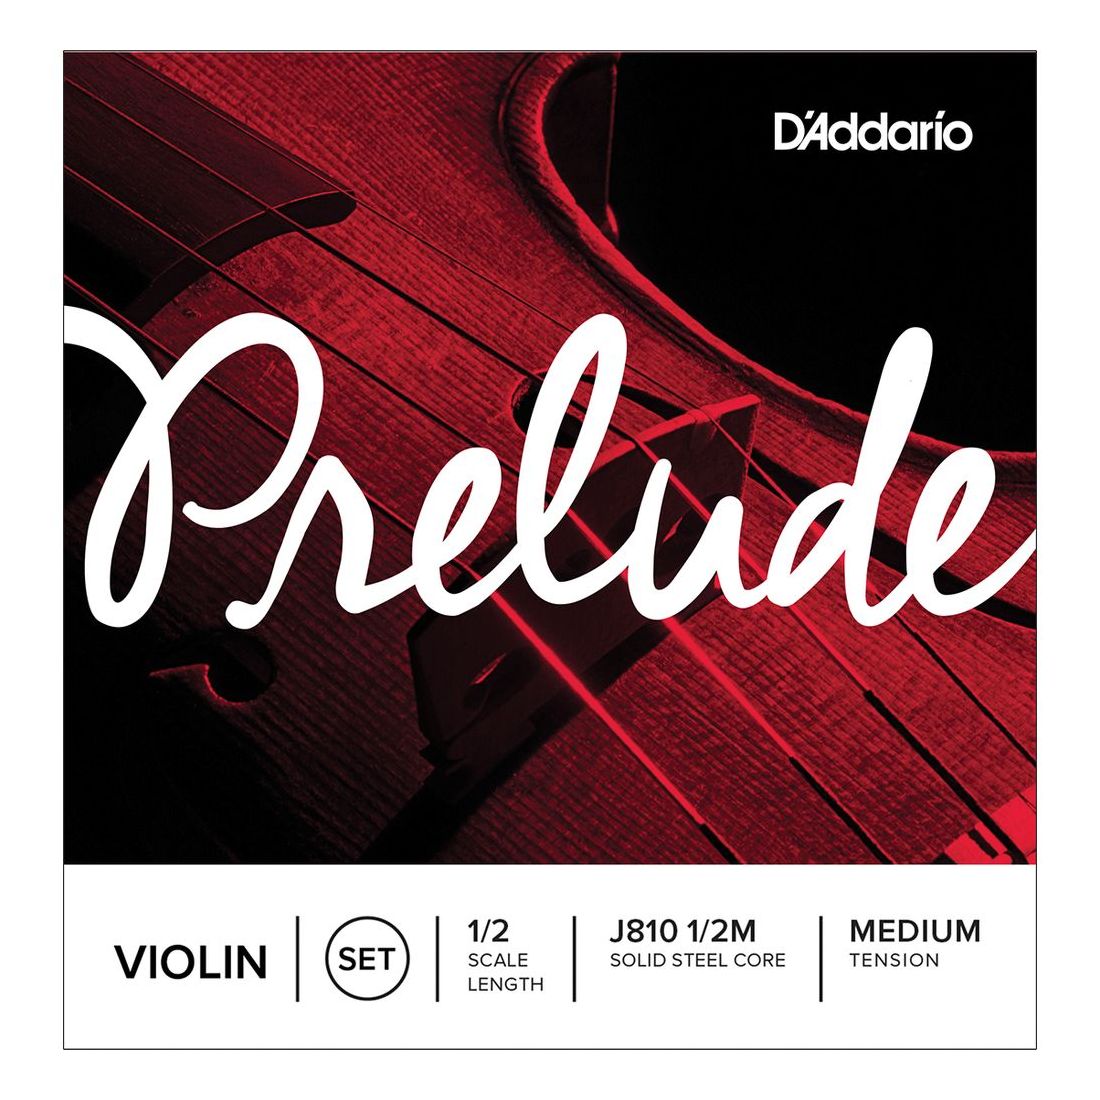 Струны D'addario J8101/2M Prelude для скрипки 1/2 Medium струны для скрипки daddario j810 1 2m prelude